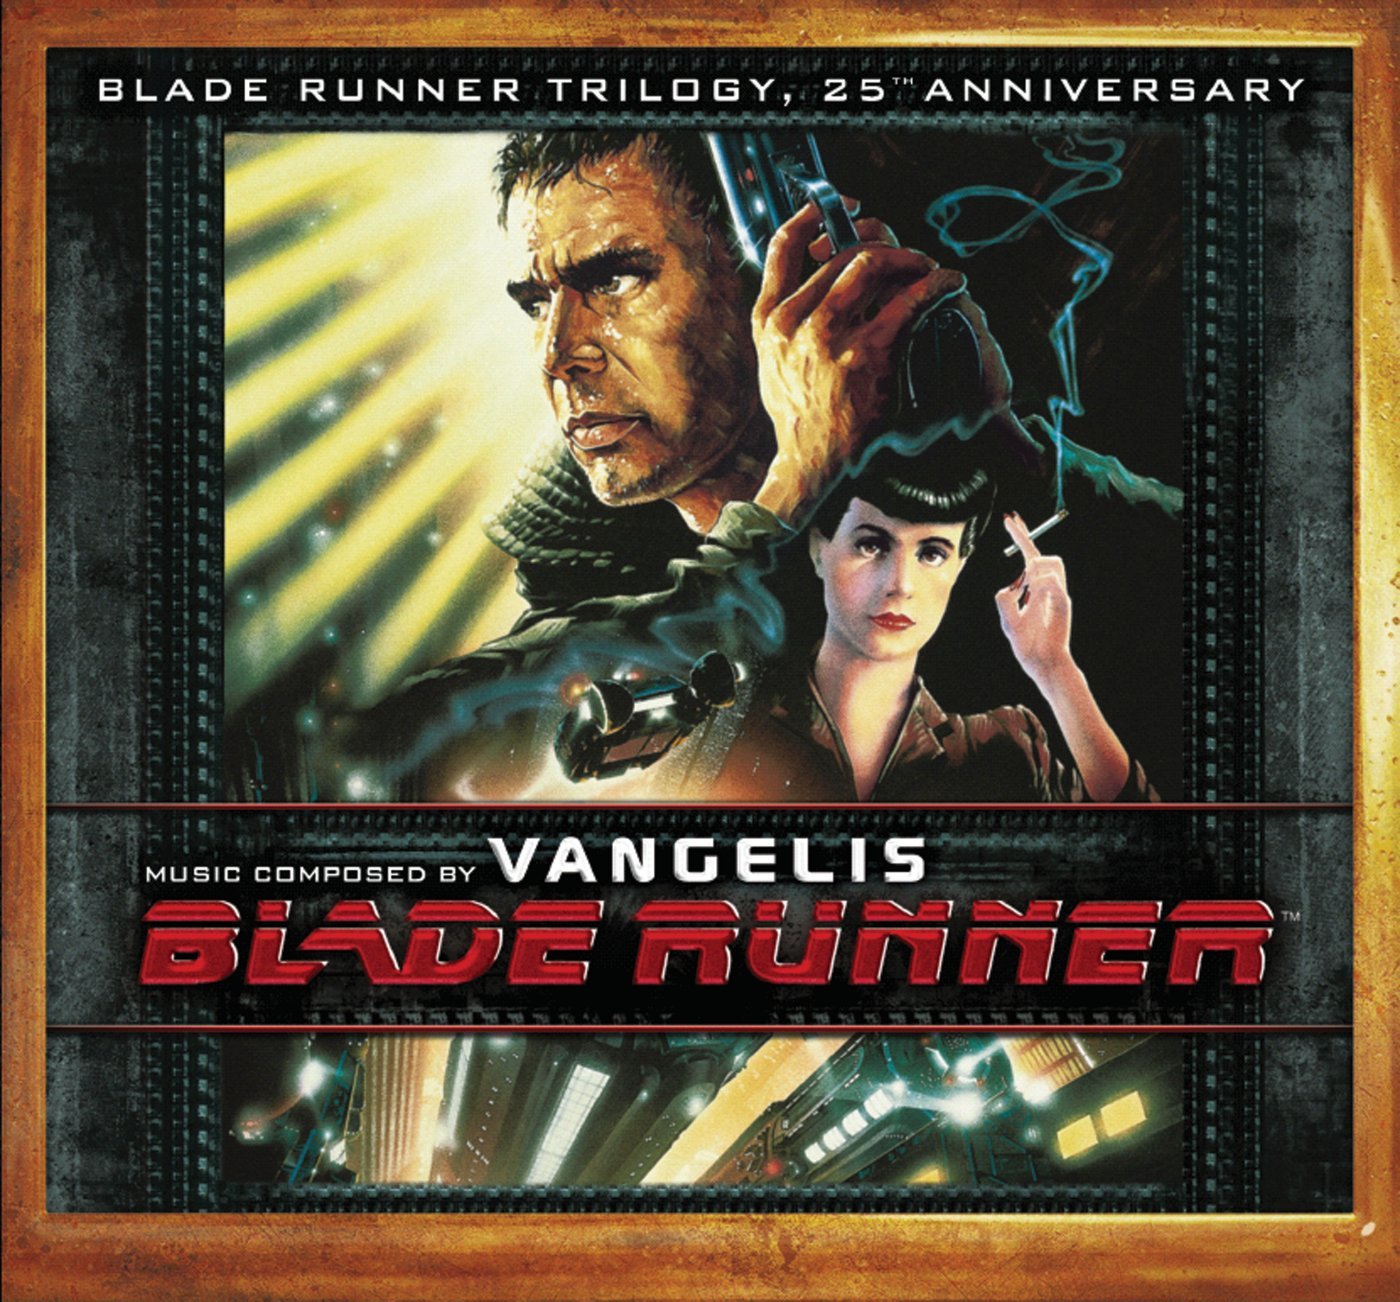 Audio Cd Vangelis - Blade Runner Trilogy 25th Anniversary (3 Cd) NUOVO SIGILLATO, EDIZIONE DEL 11/01/2008 SUBITO DISPONIBILE